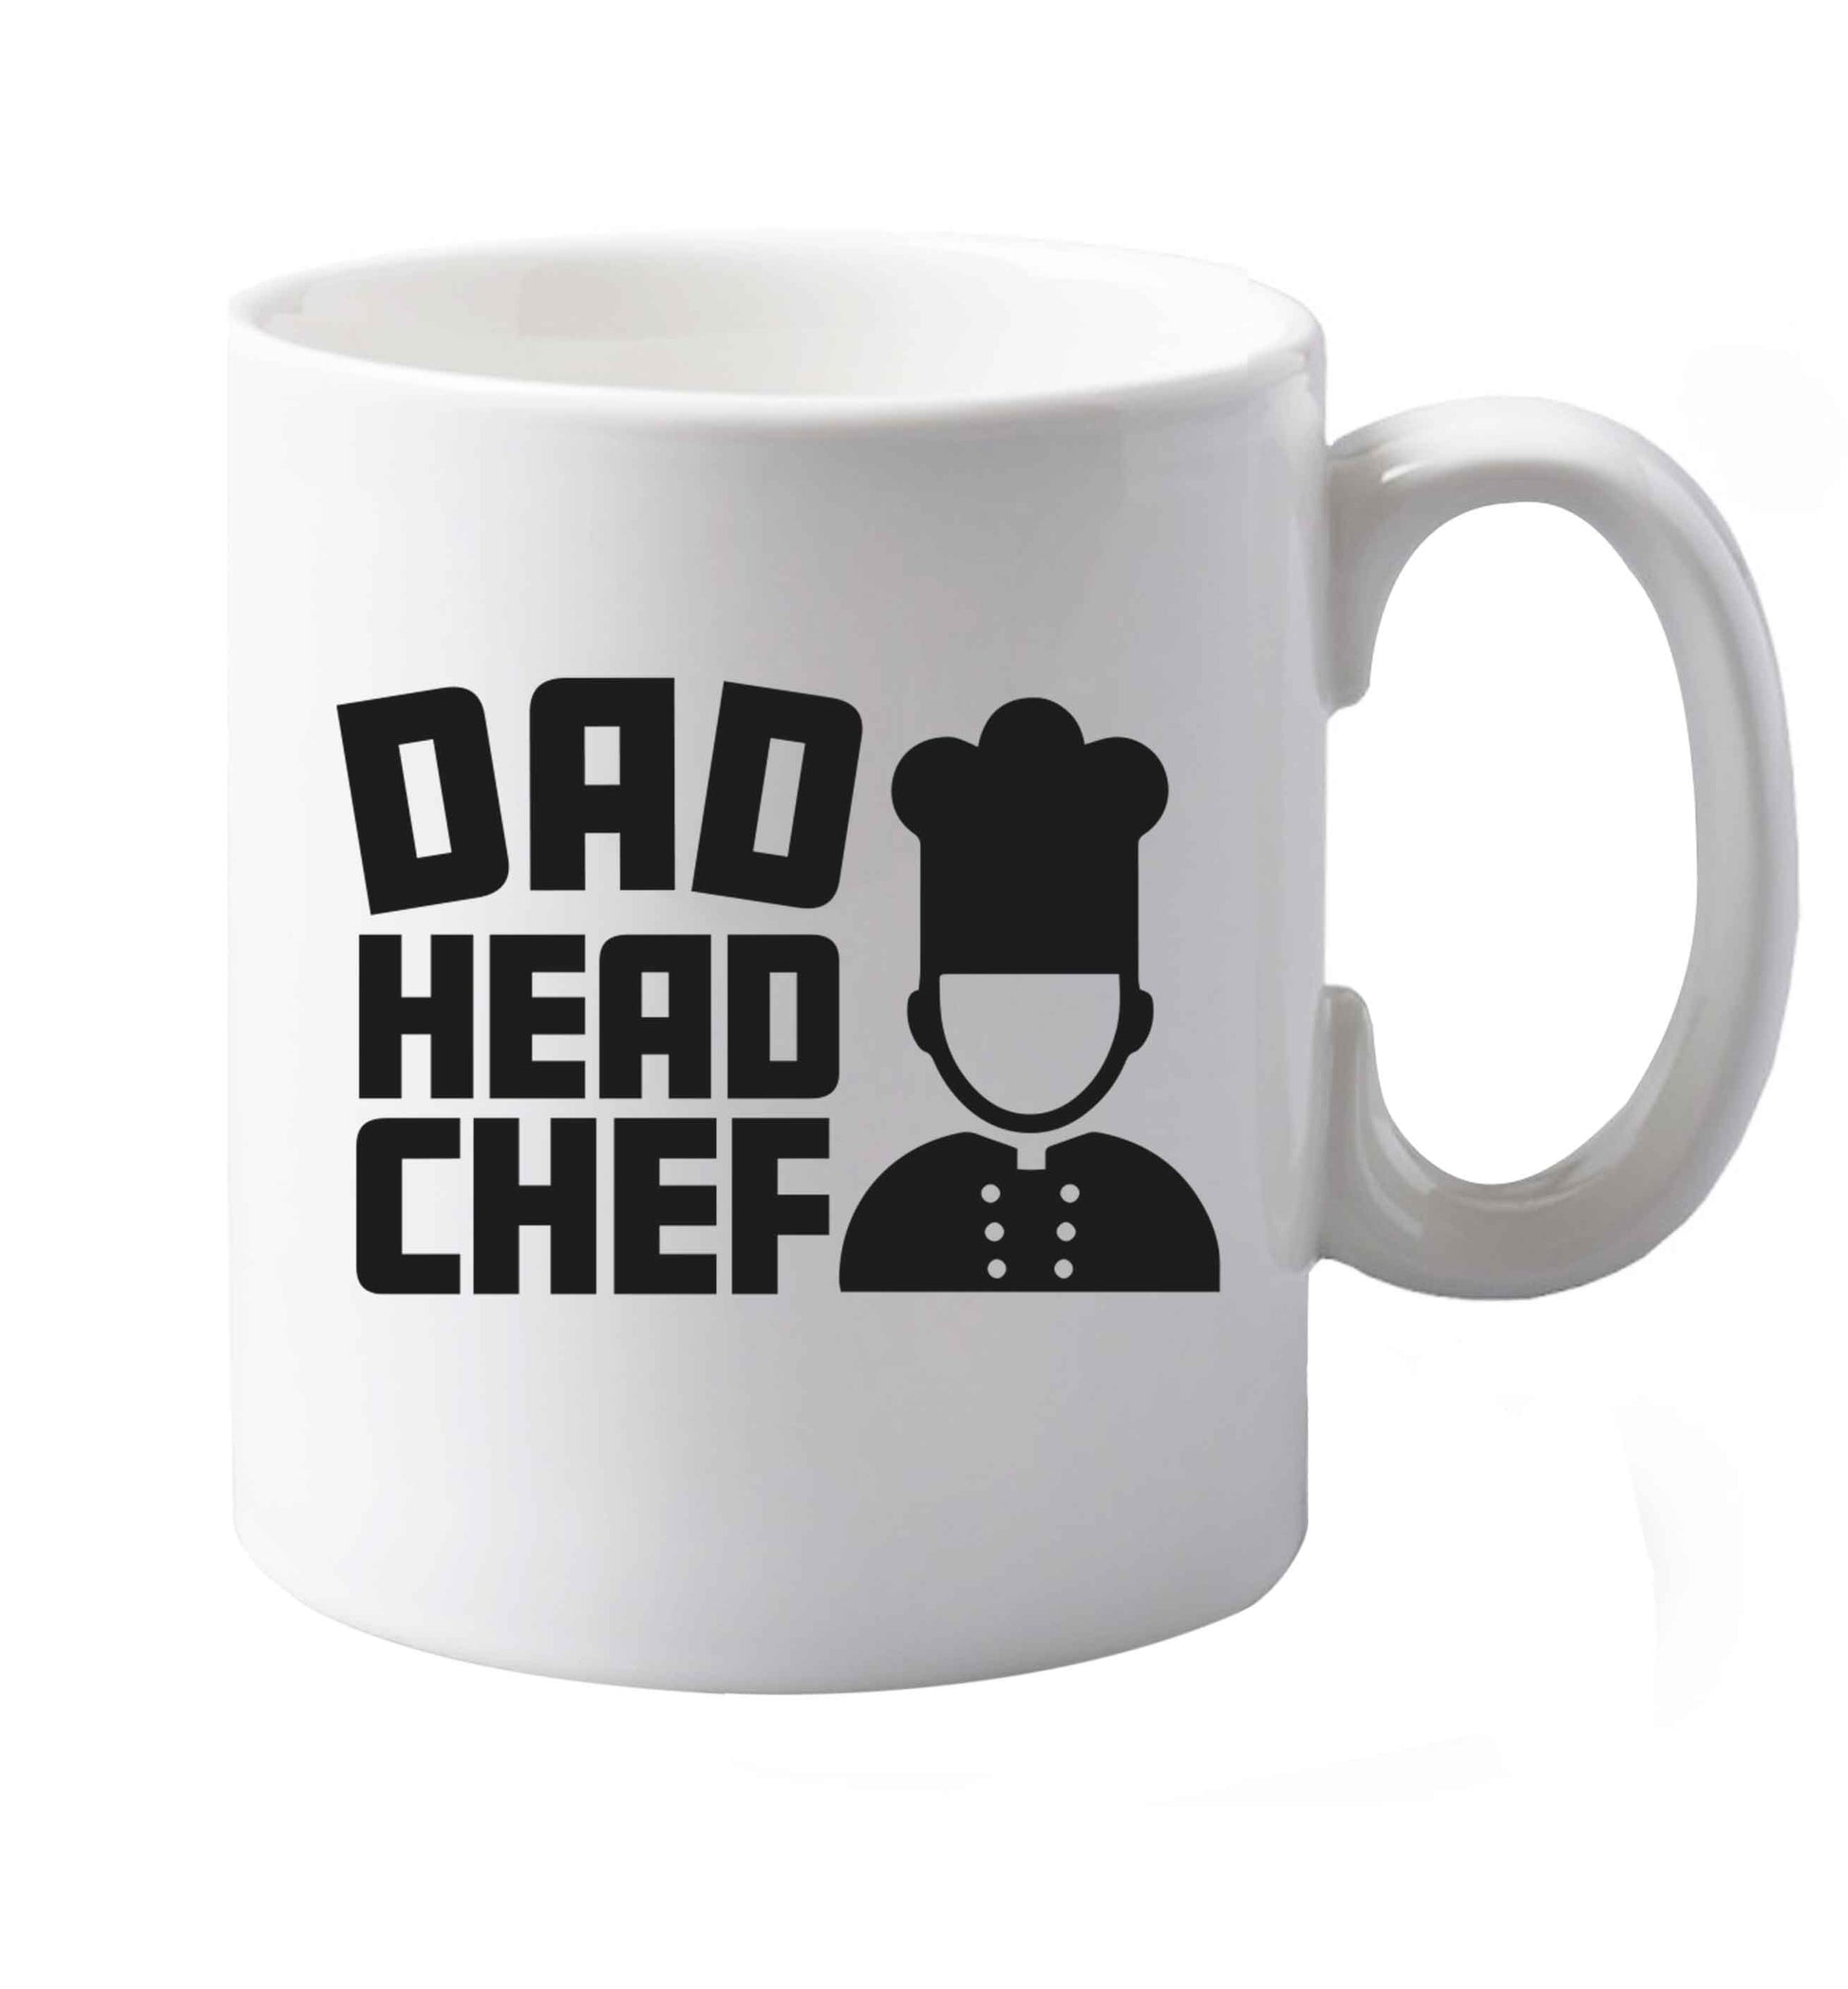 10 oz Dad head chef ceramic mug both sides